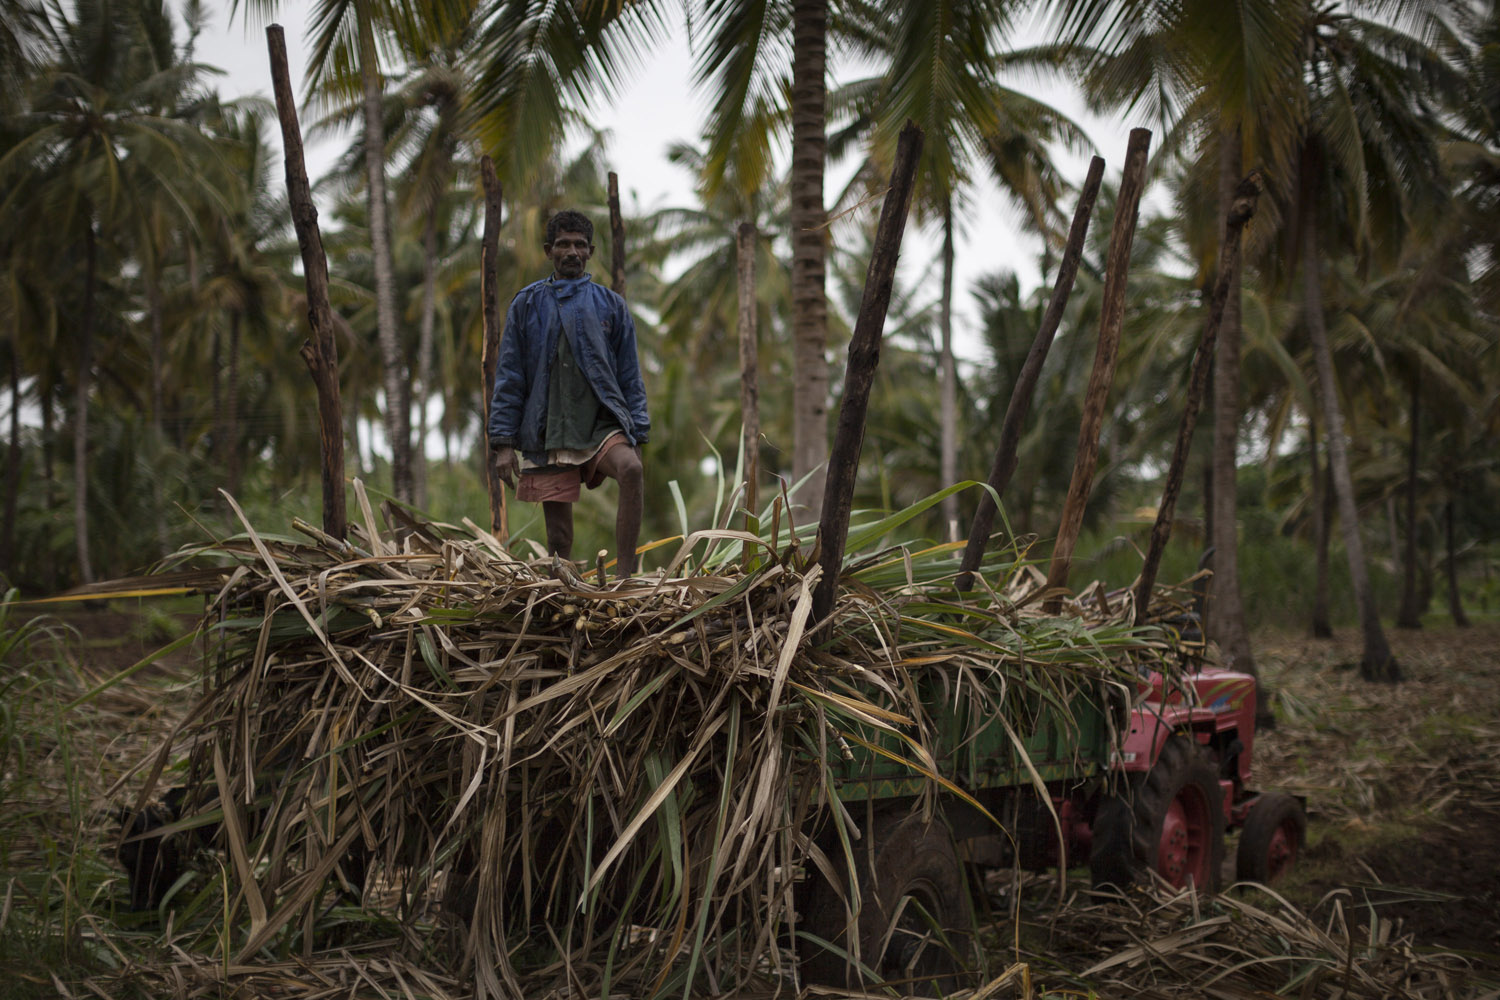 Loading harvested sugarcane near Chikkamandhgere.